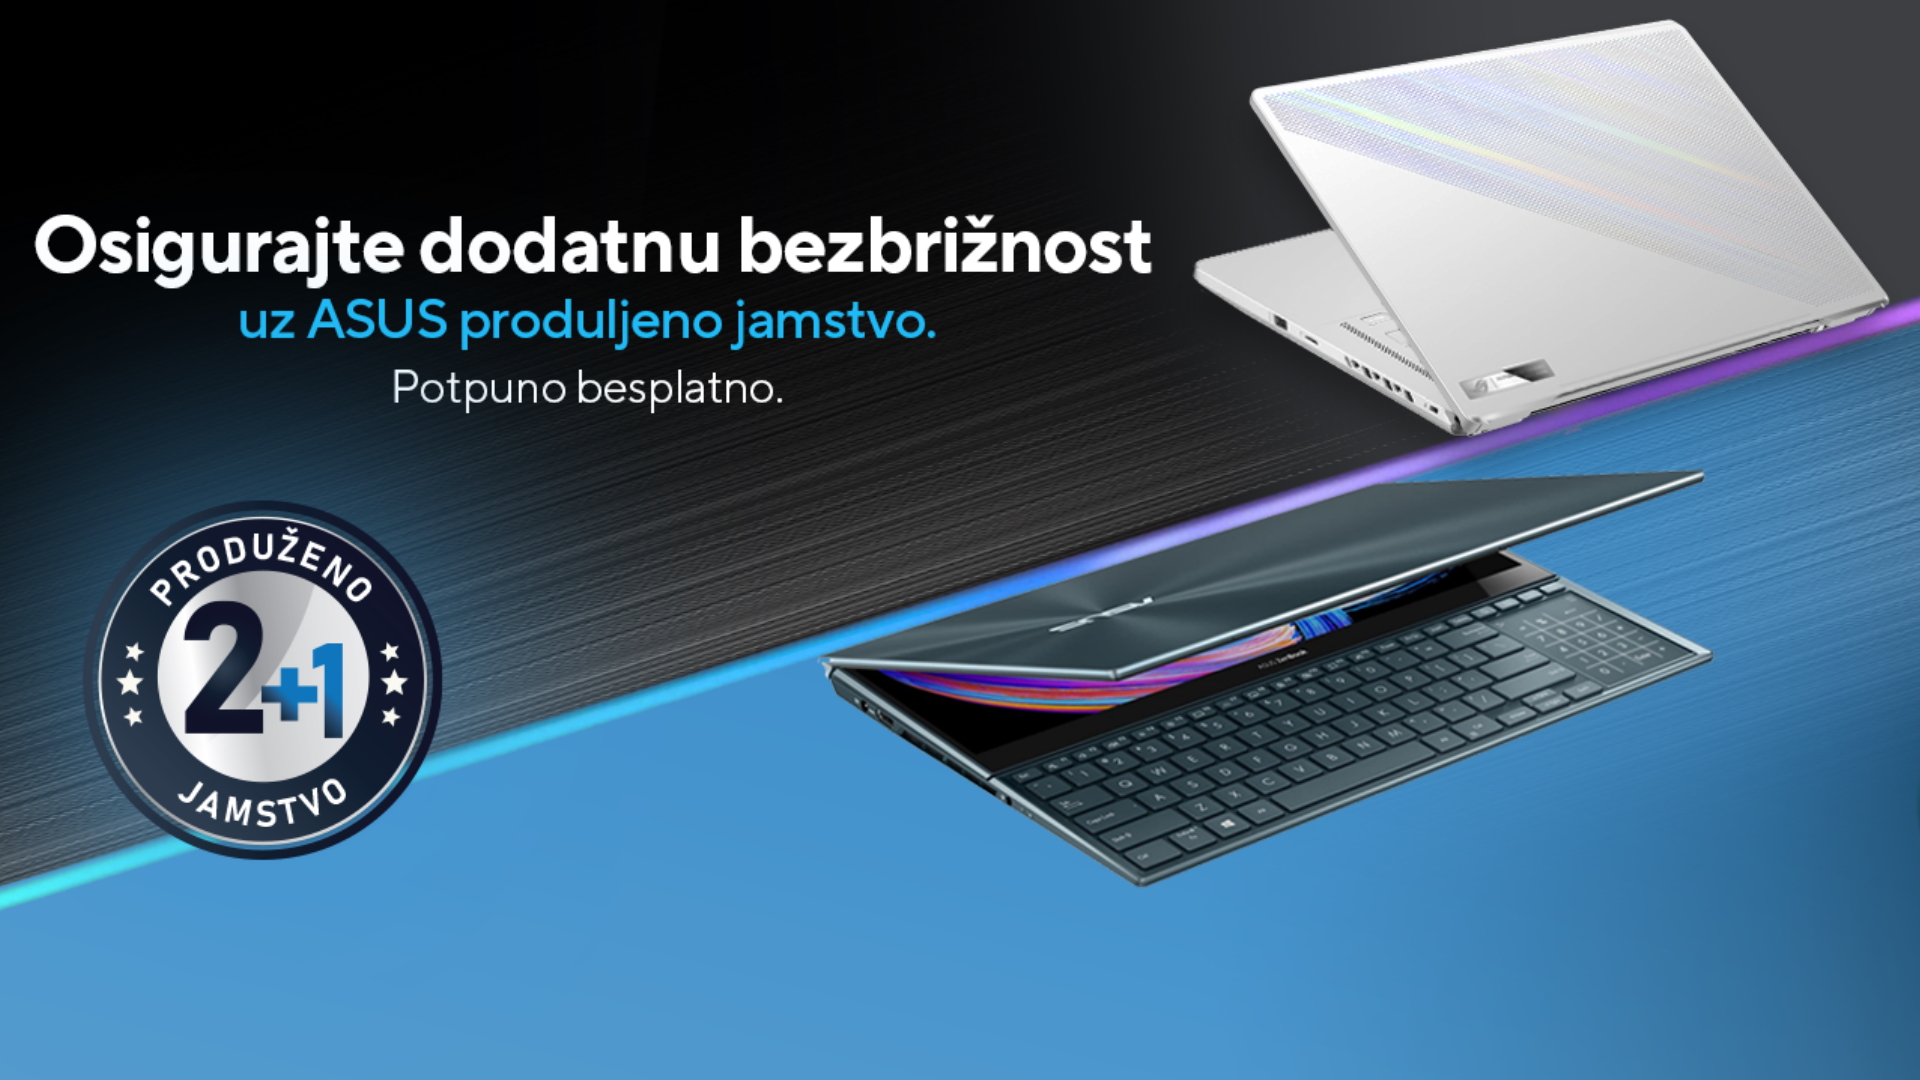 Asus Vam pruža dodatnu bezbrižnost uz besplatno produljeno jamstvo za sve ZenBook i ROG Zephyrus prijenosnike.